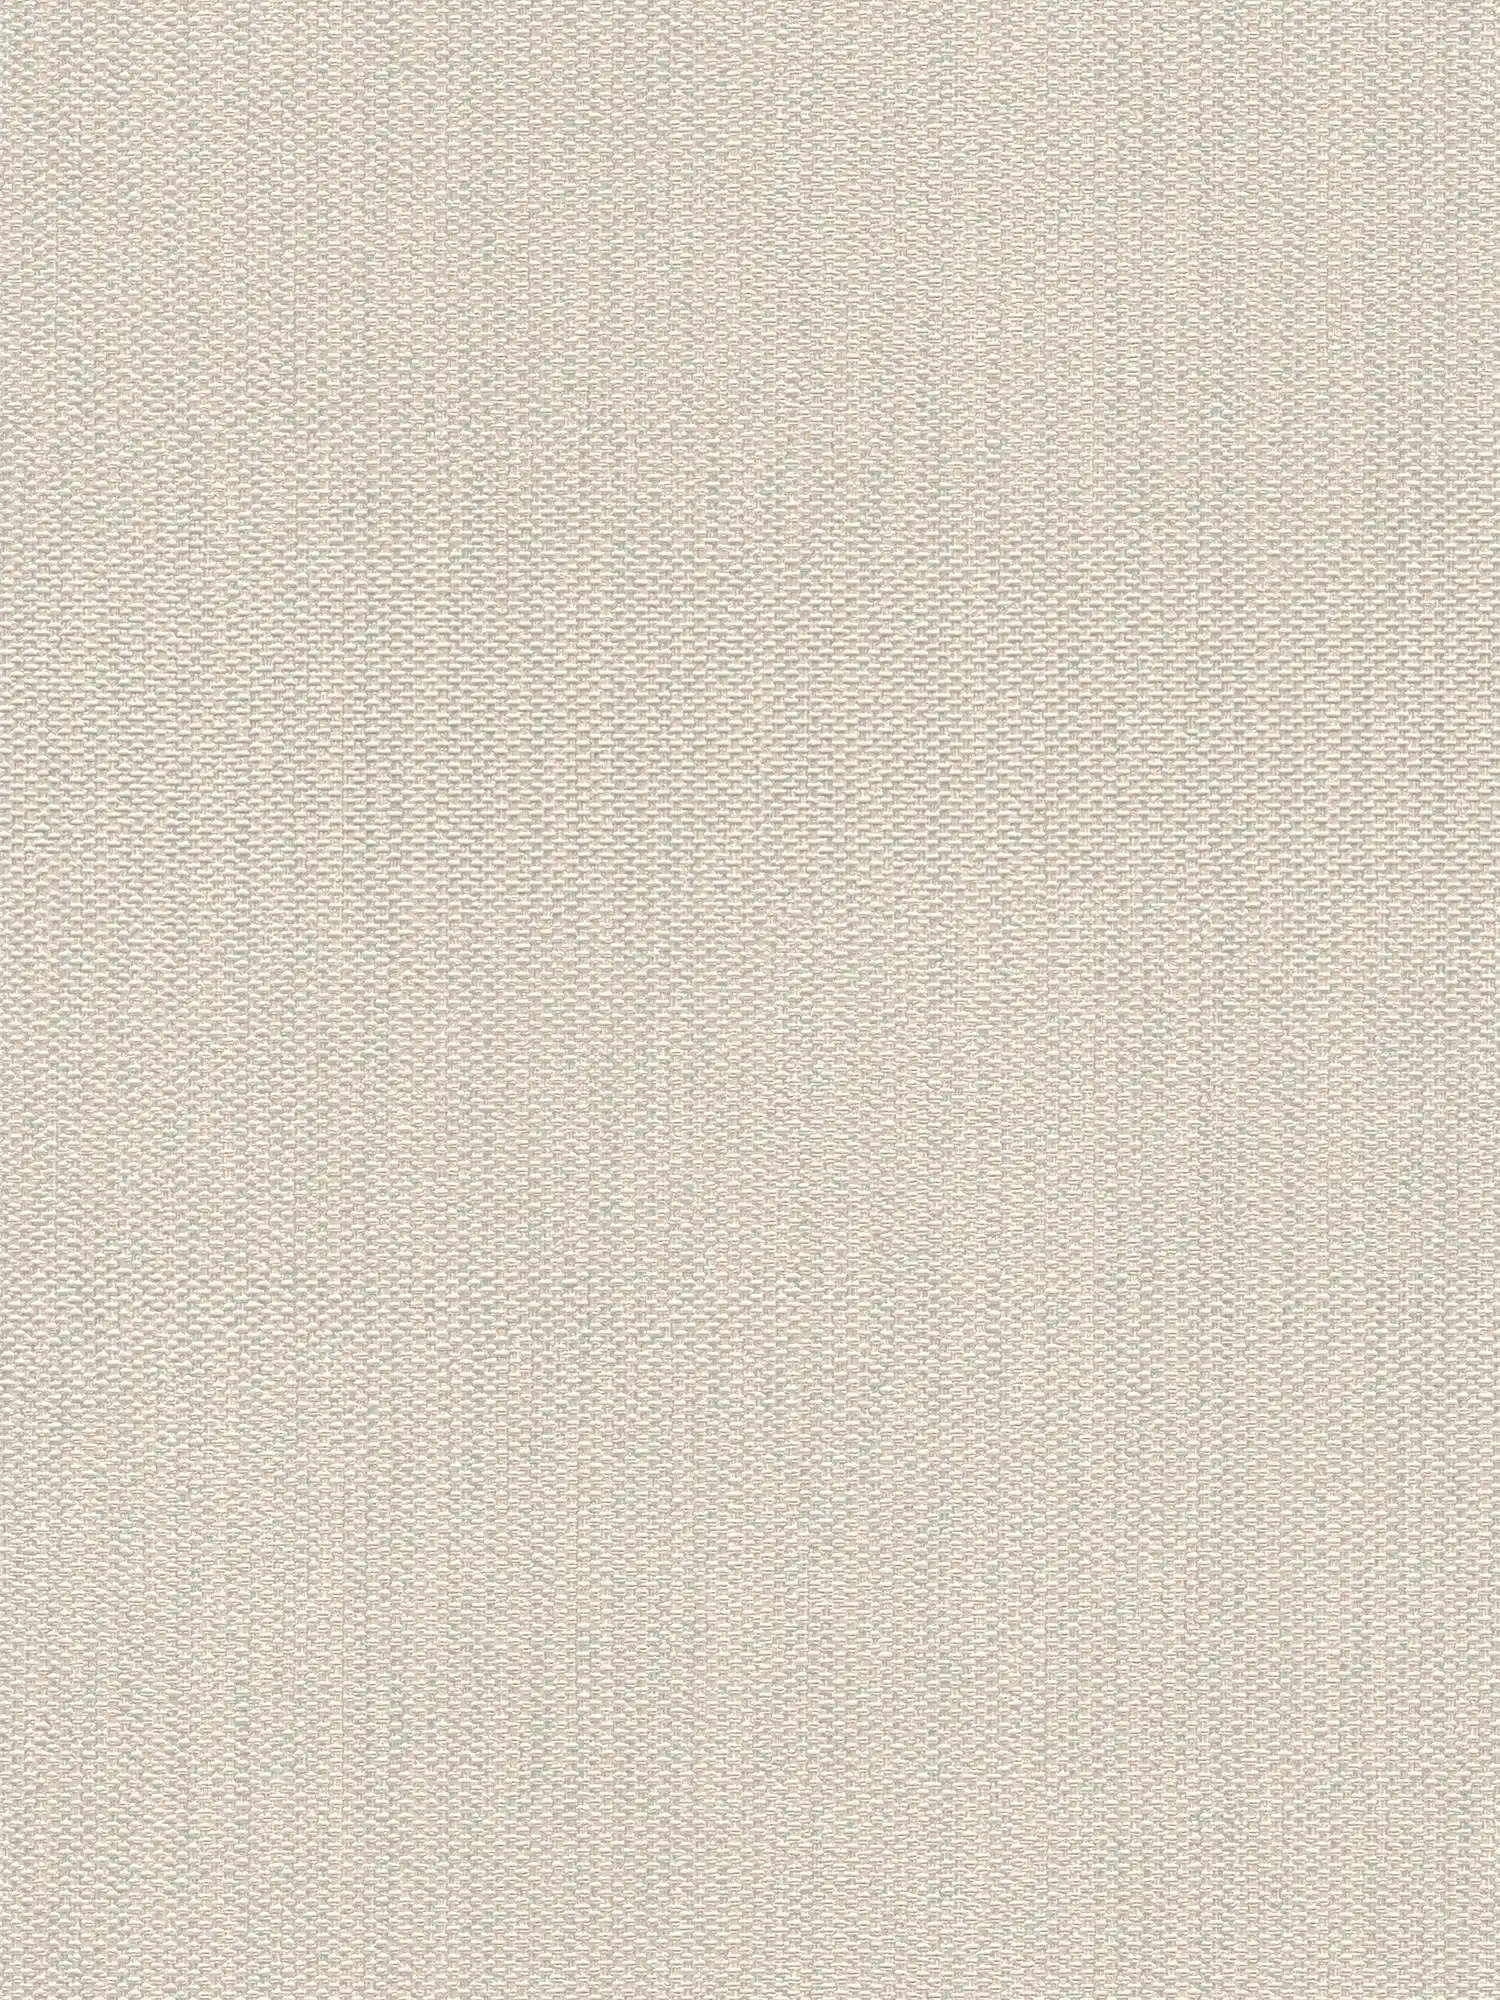 Non-woven wallpaper in textile look - cream, grey
